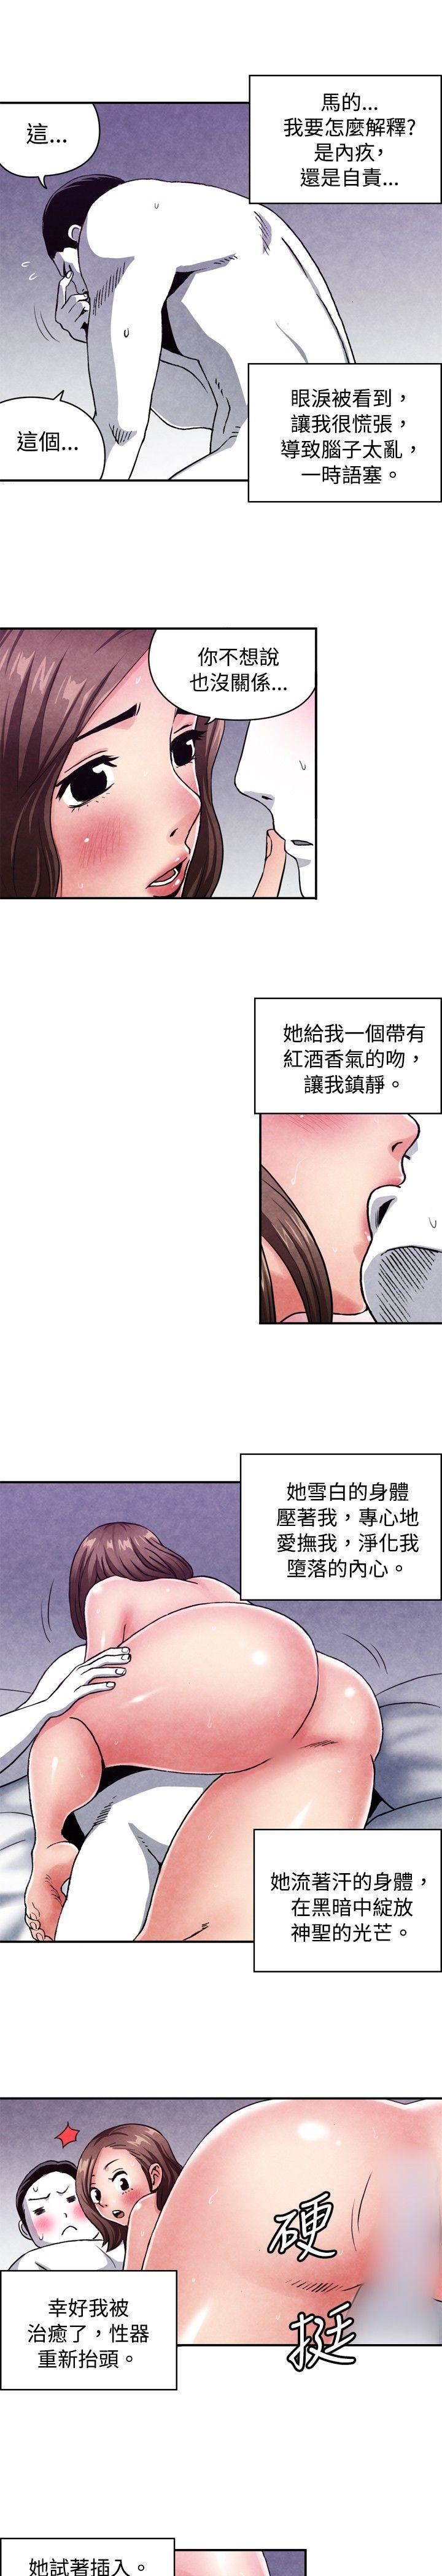 韩国污漫画 生物學的女性攻略法 CASE08-2.保险王和夫人 3